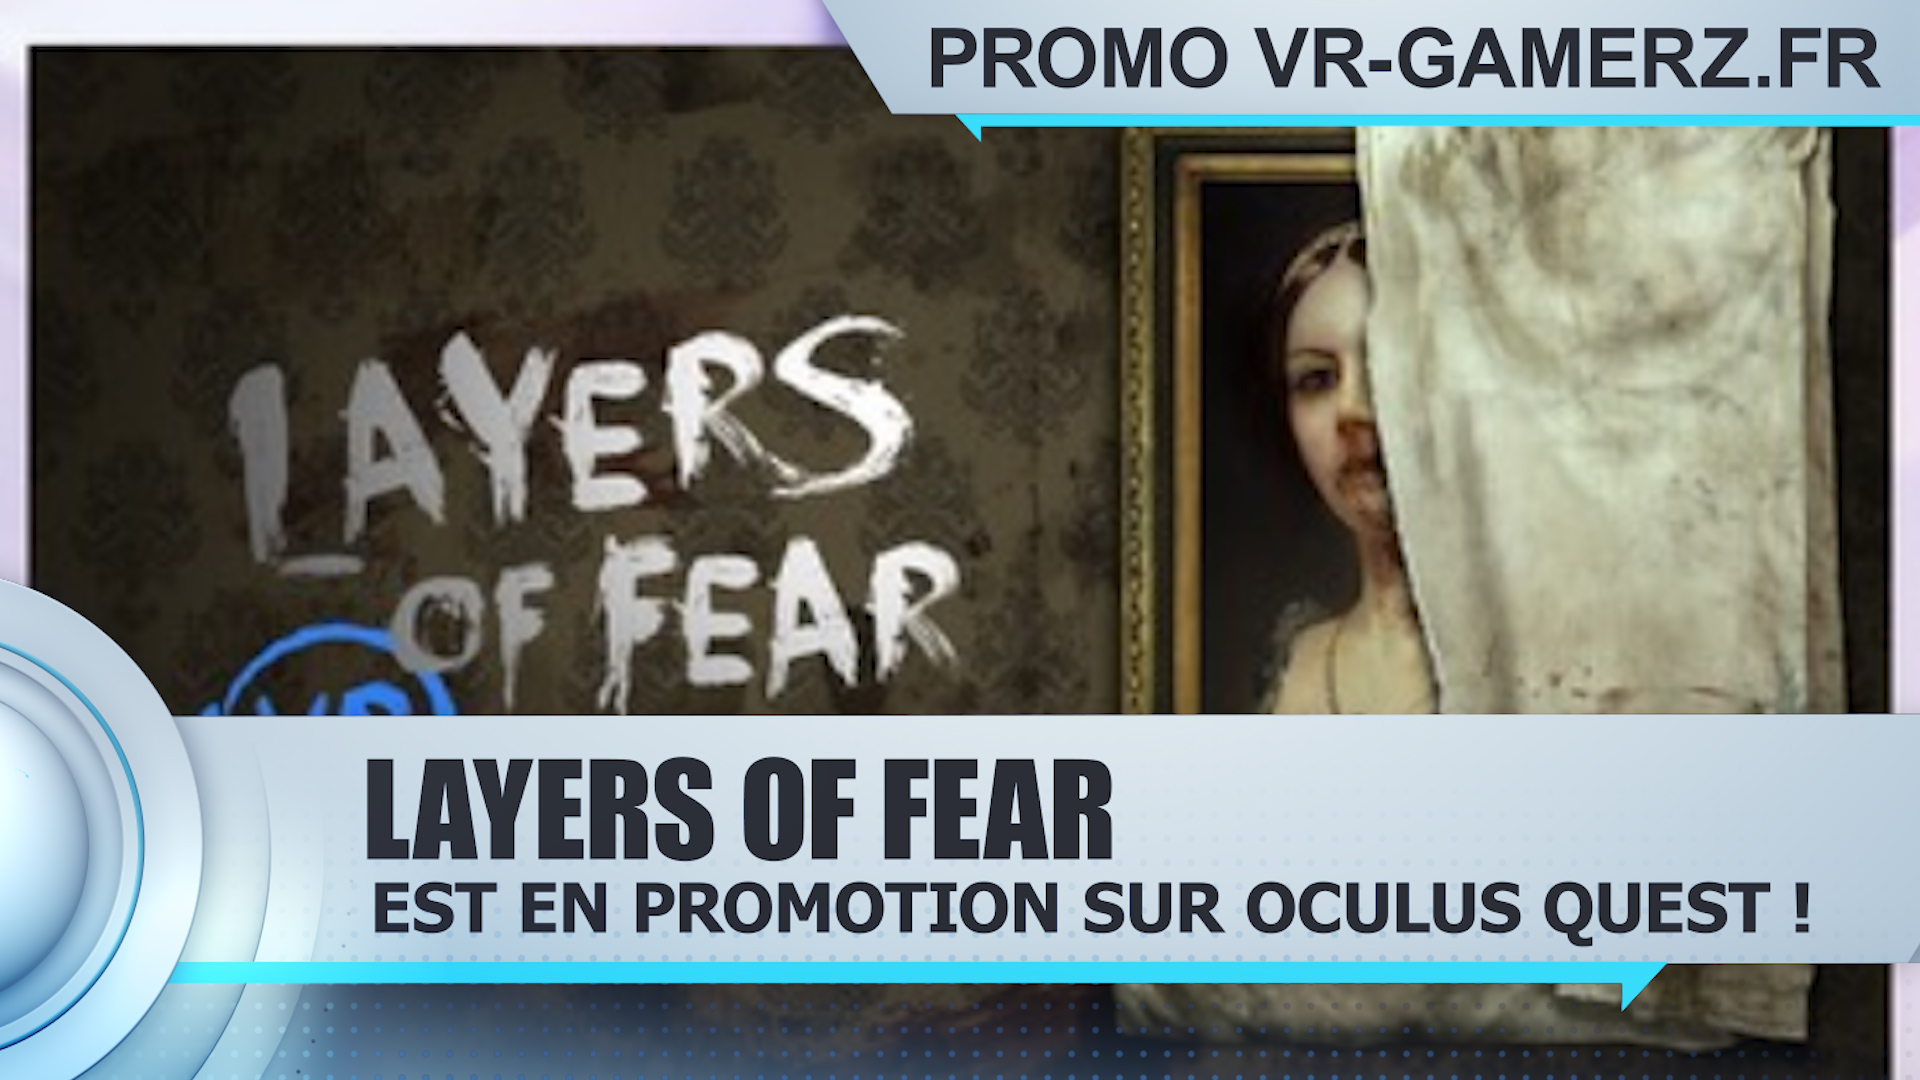 Layers of fear est en promotion sur Oculus quest !